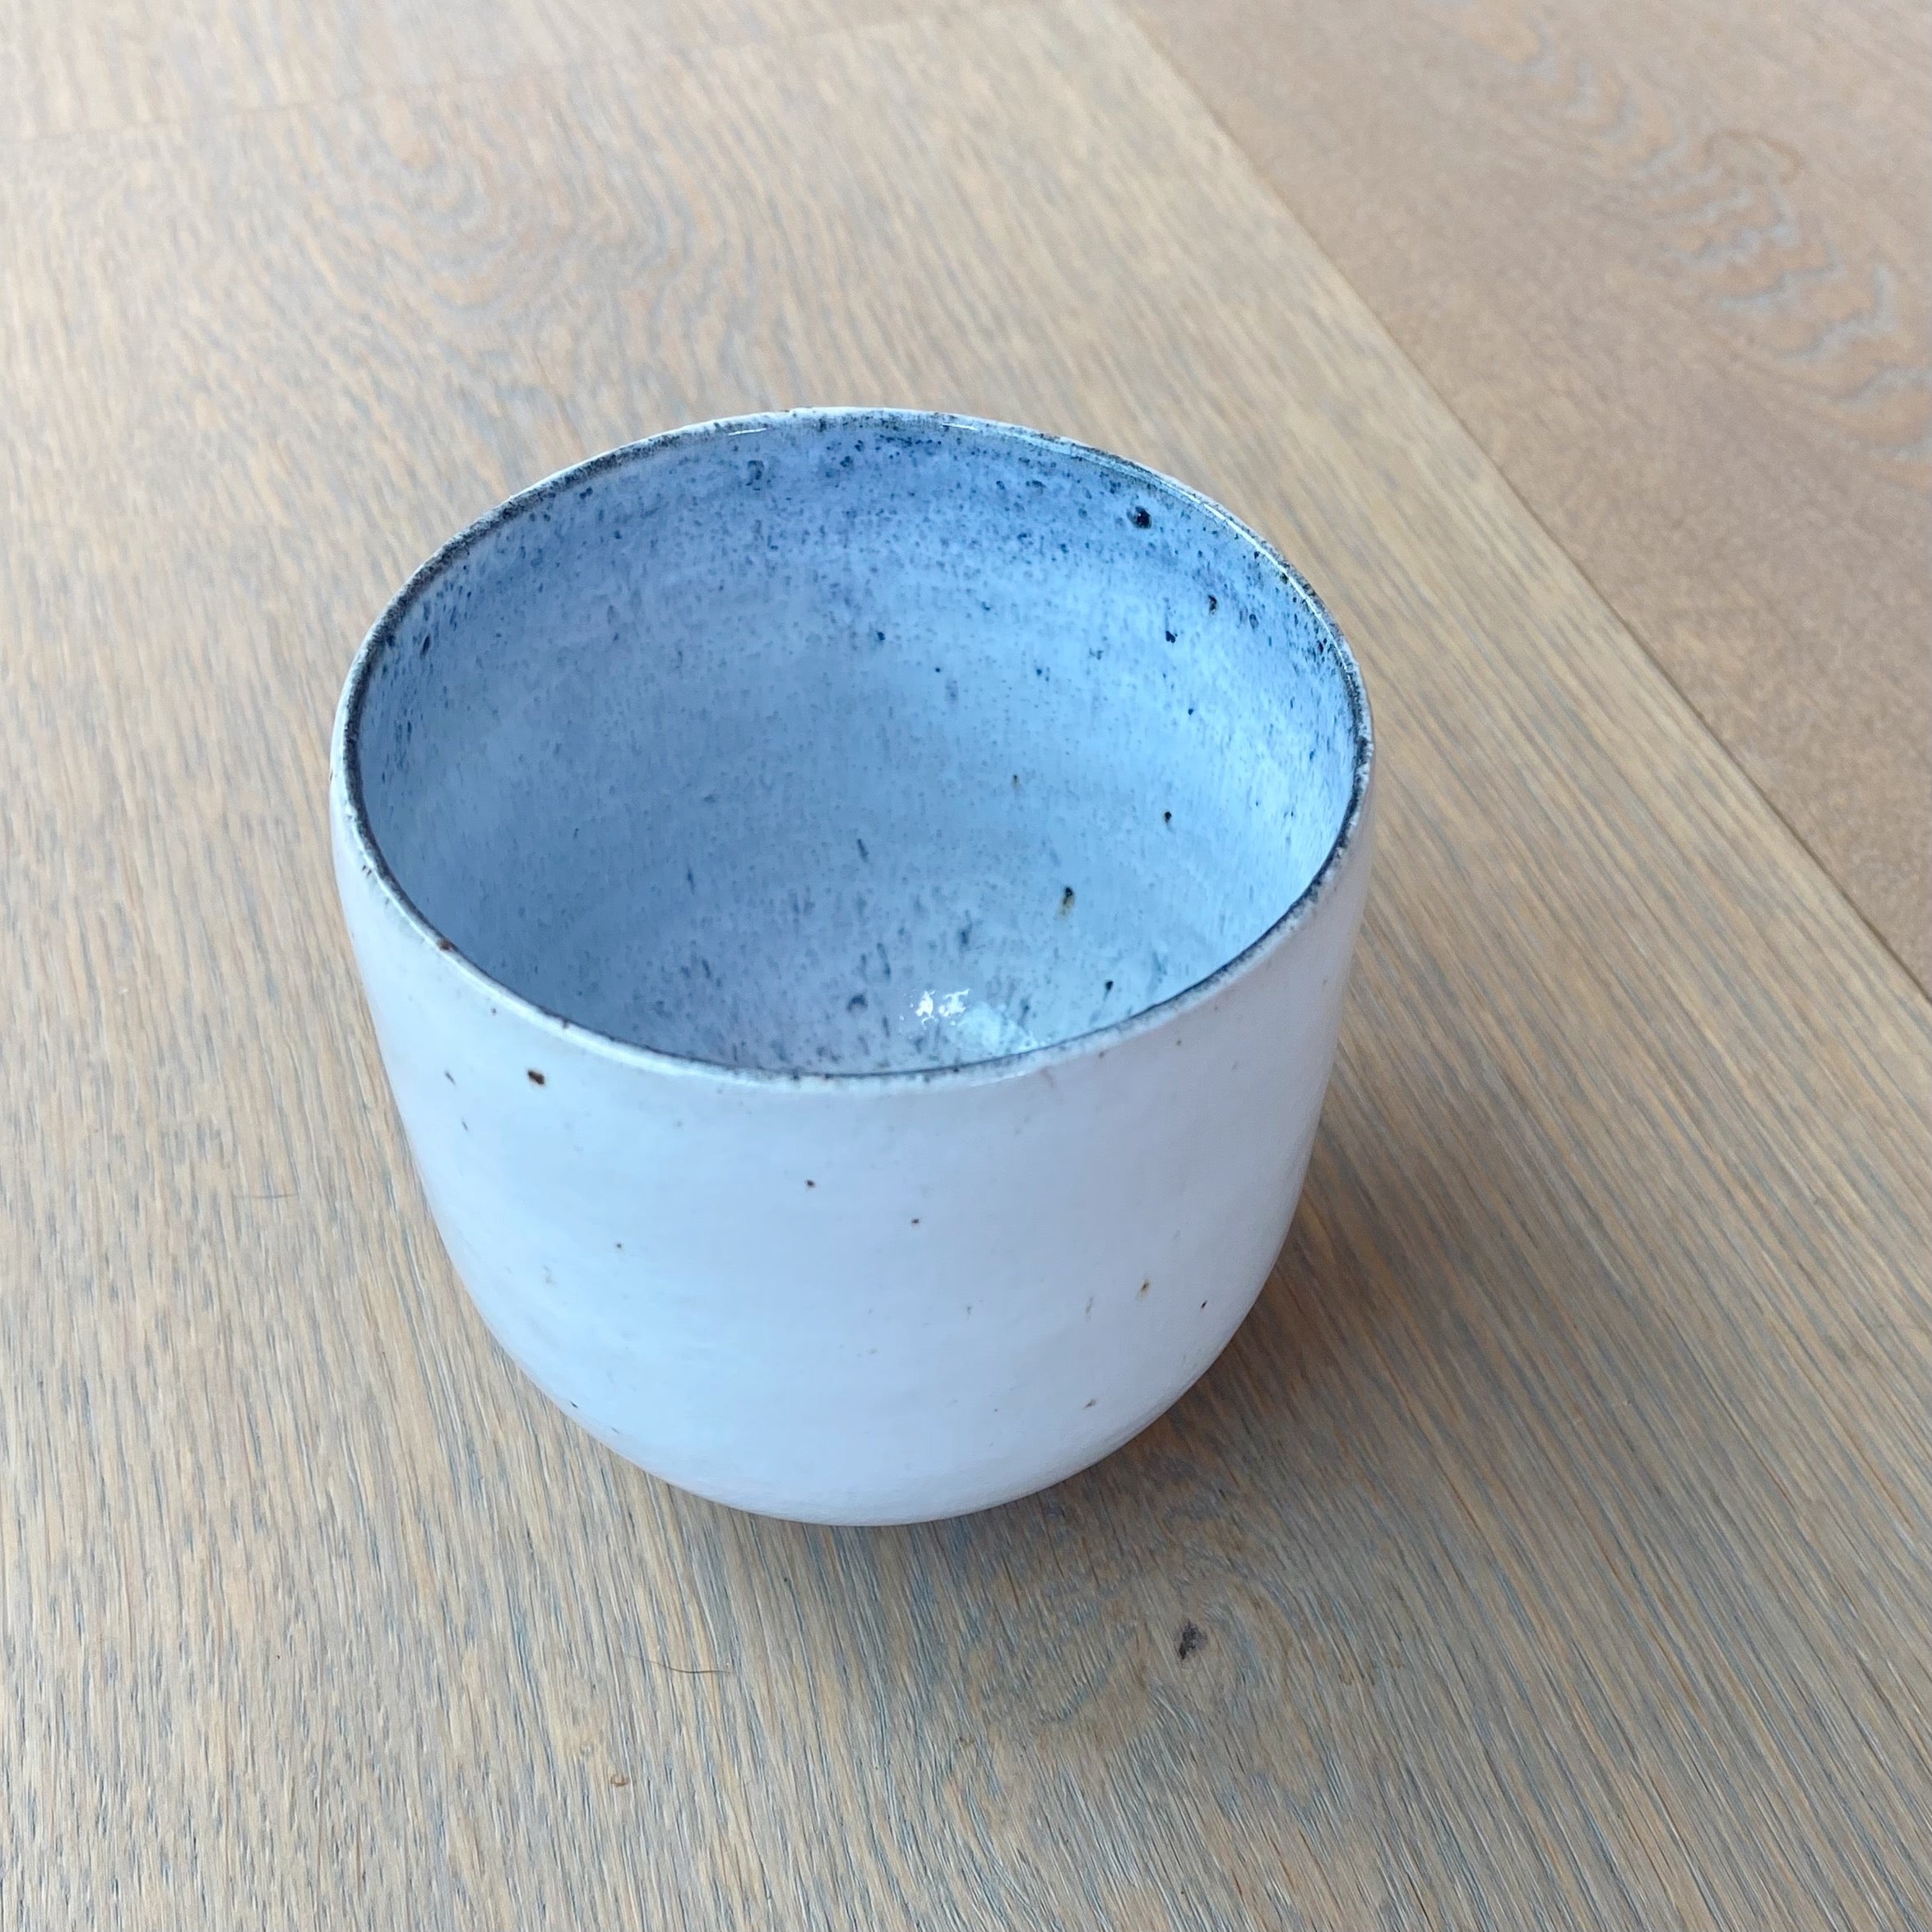 Tasja P kaffekop - off white og lyseblå